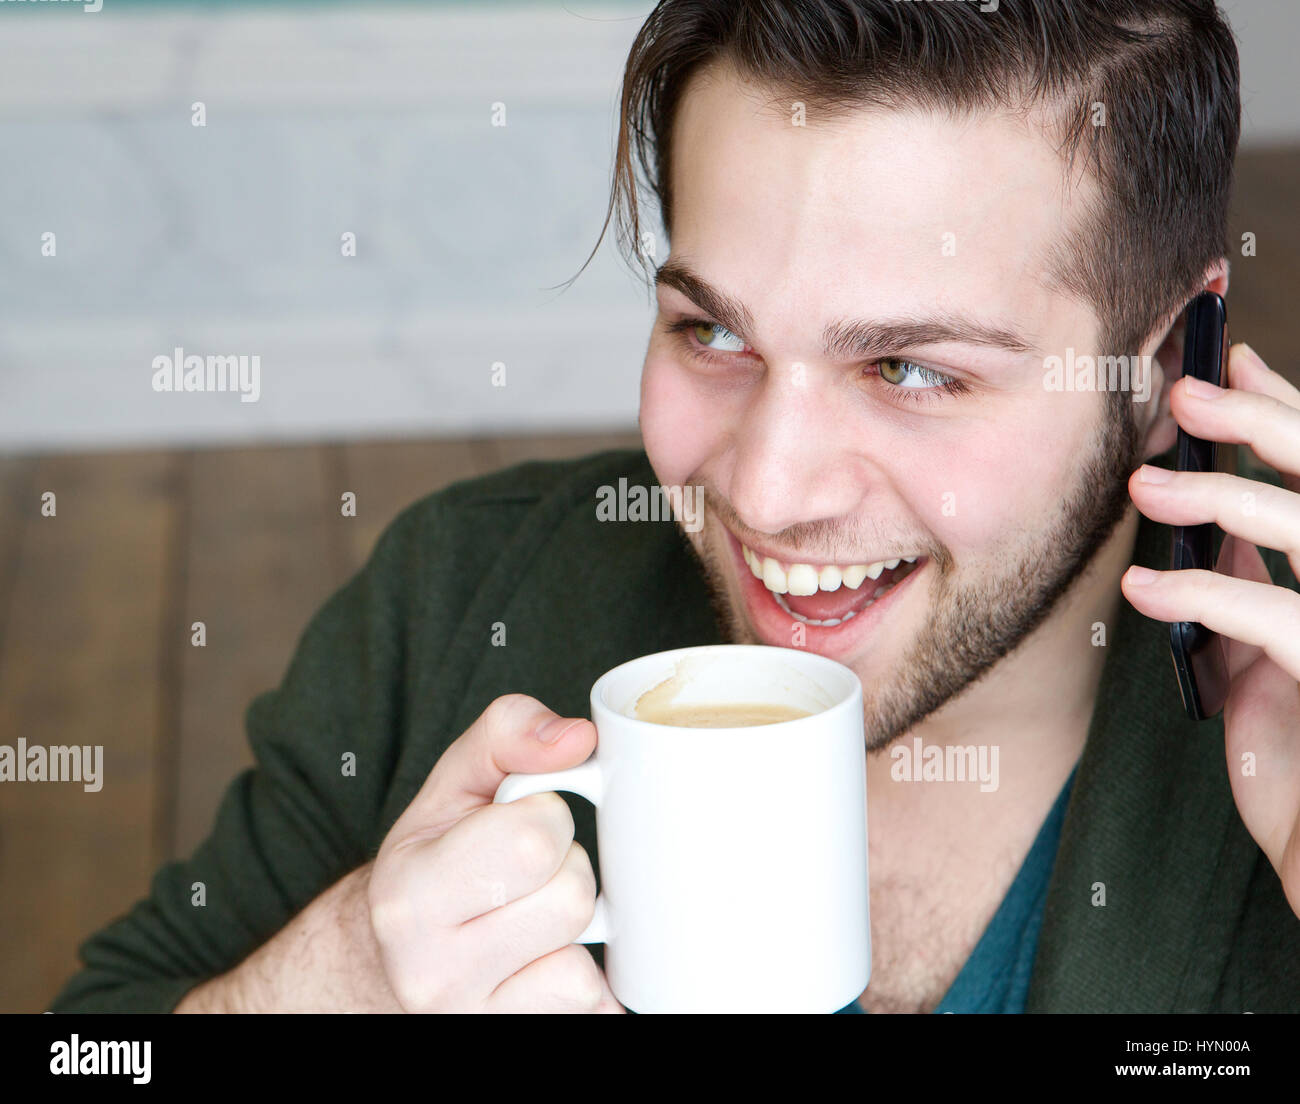 Porträt eines jungen Mannes lächelnd und Tasse Kaffee genießen, mit Handy zu Hause hautnah Stockfoto